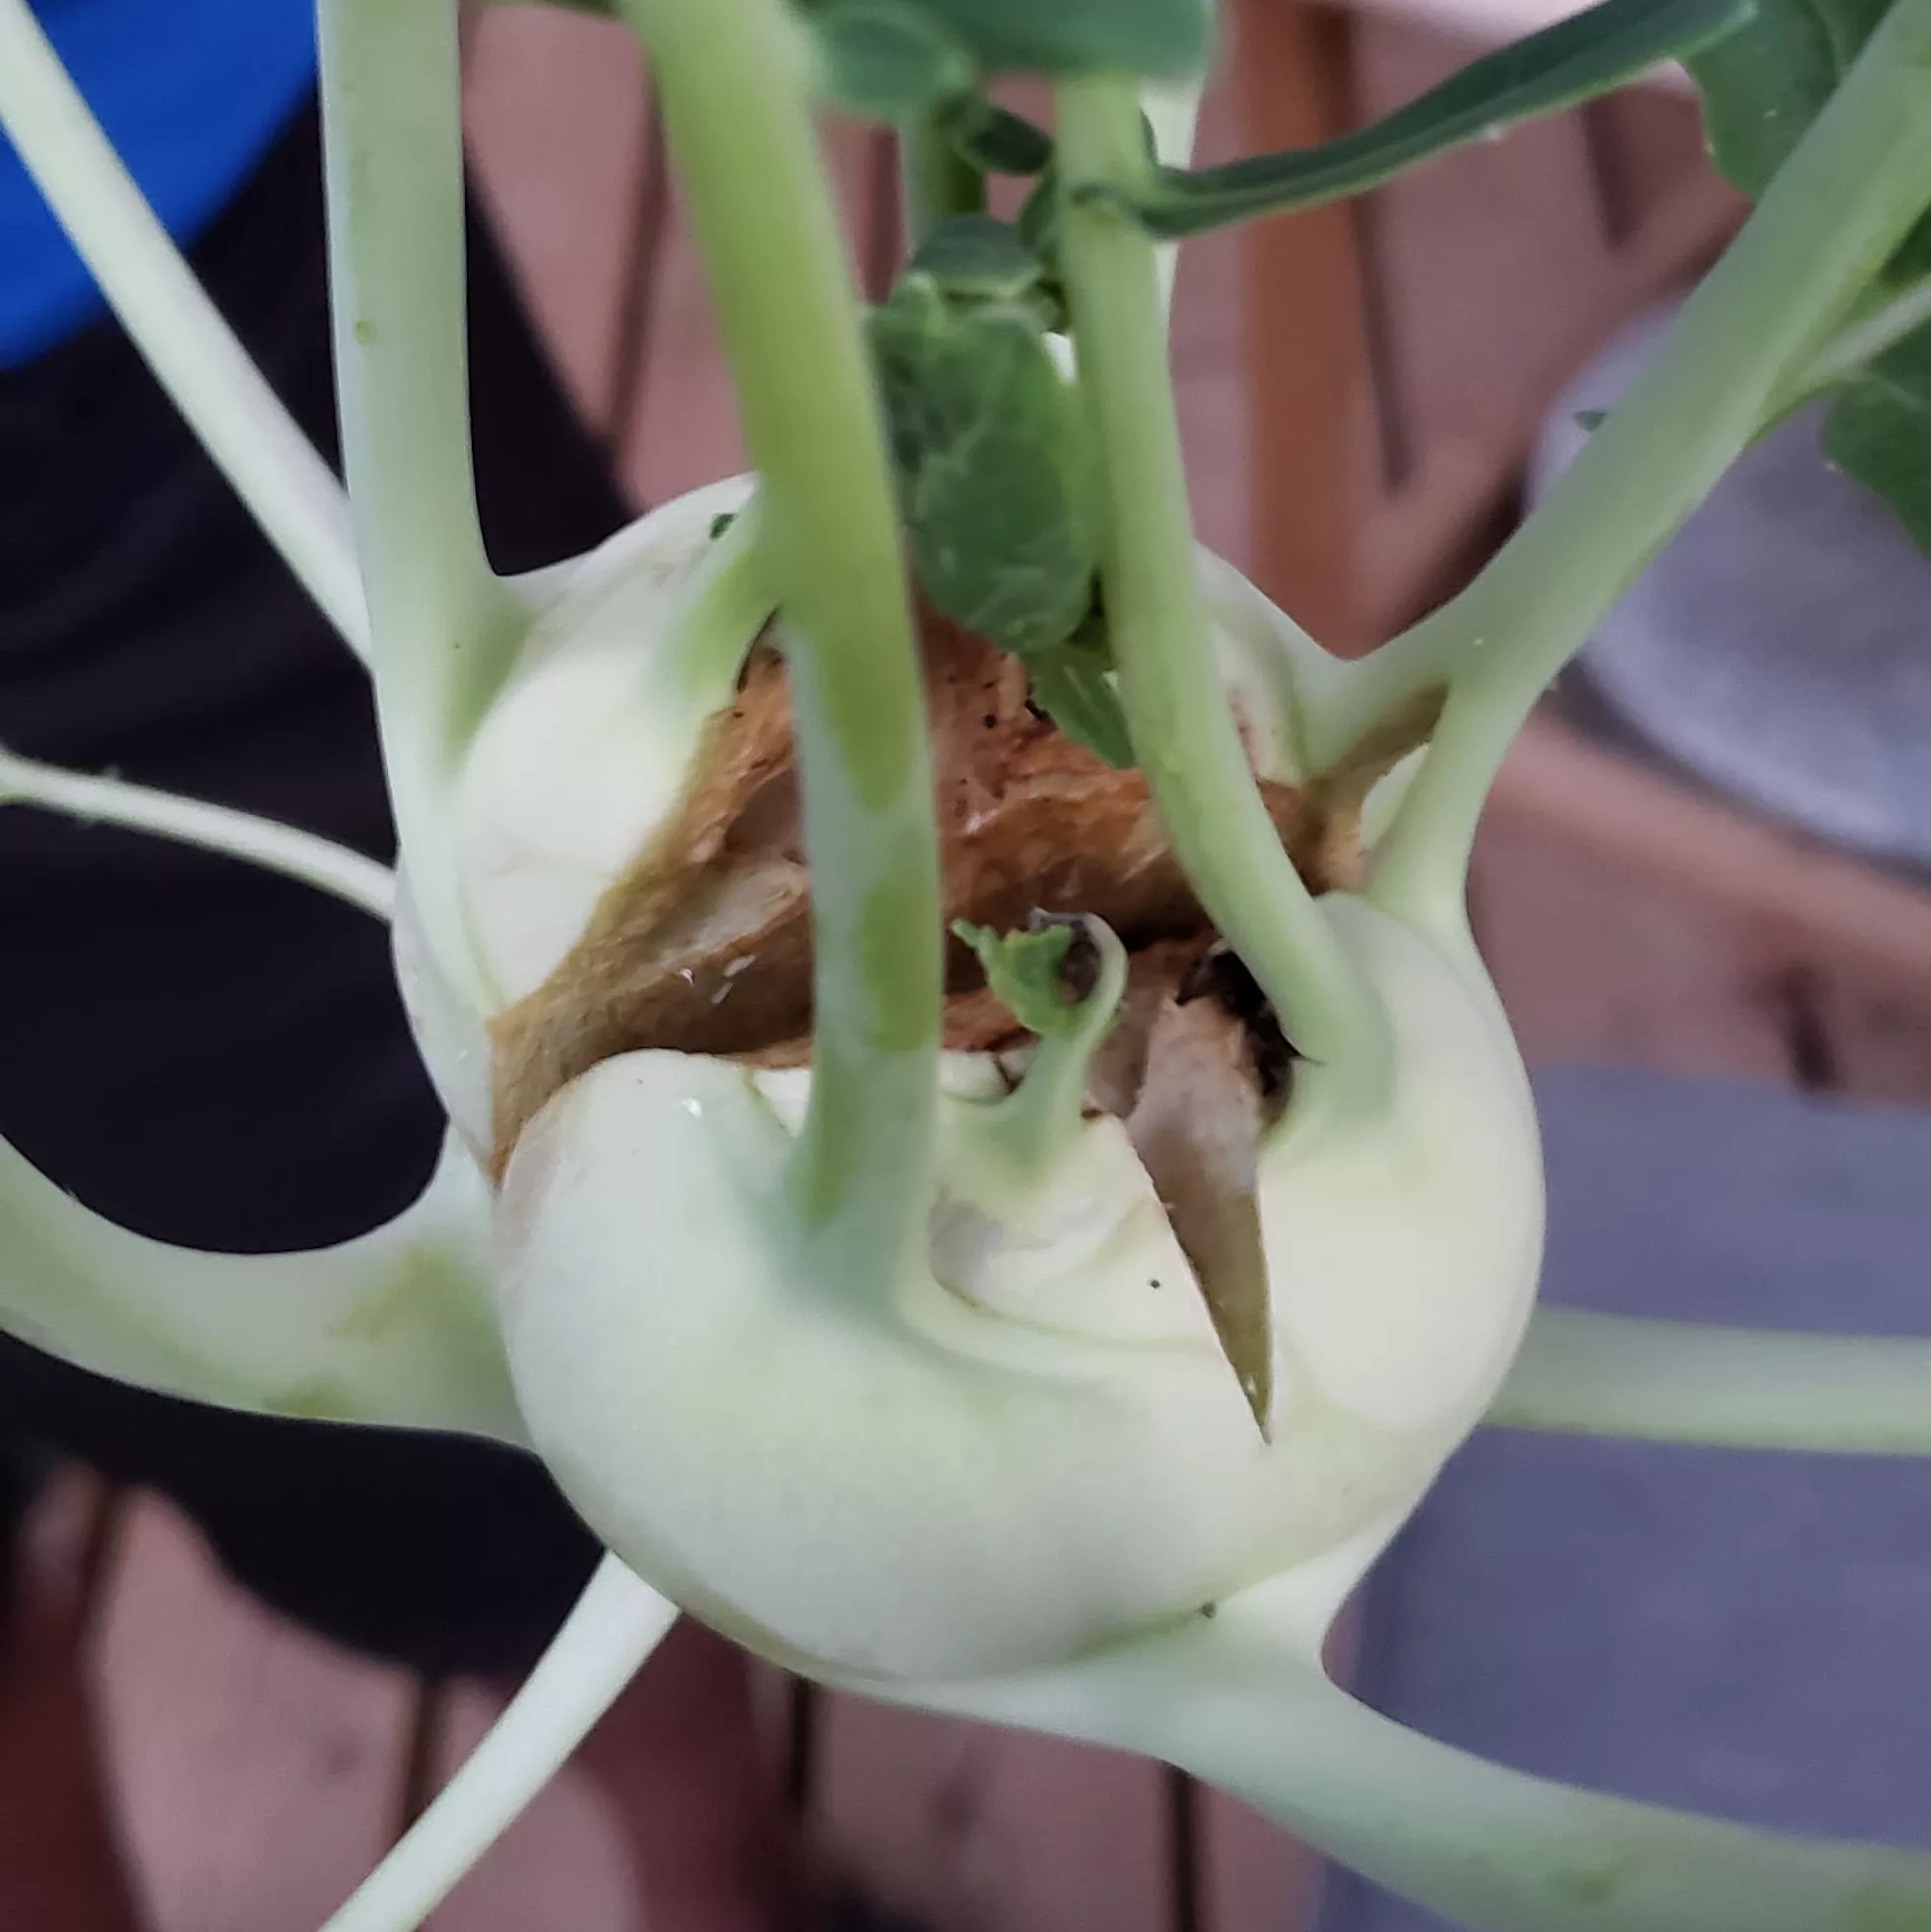 Swede midge damage on a kohlrabi, causing the plant to split open 